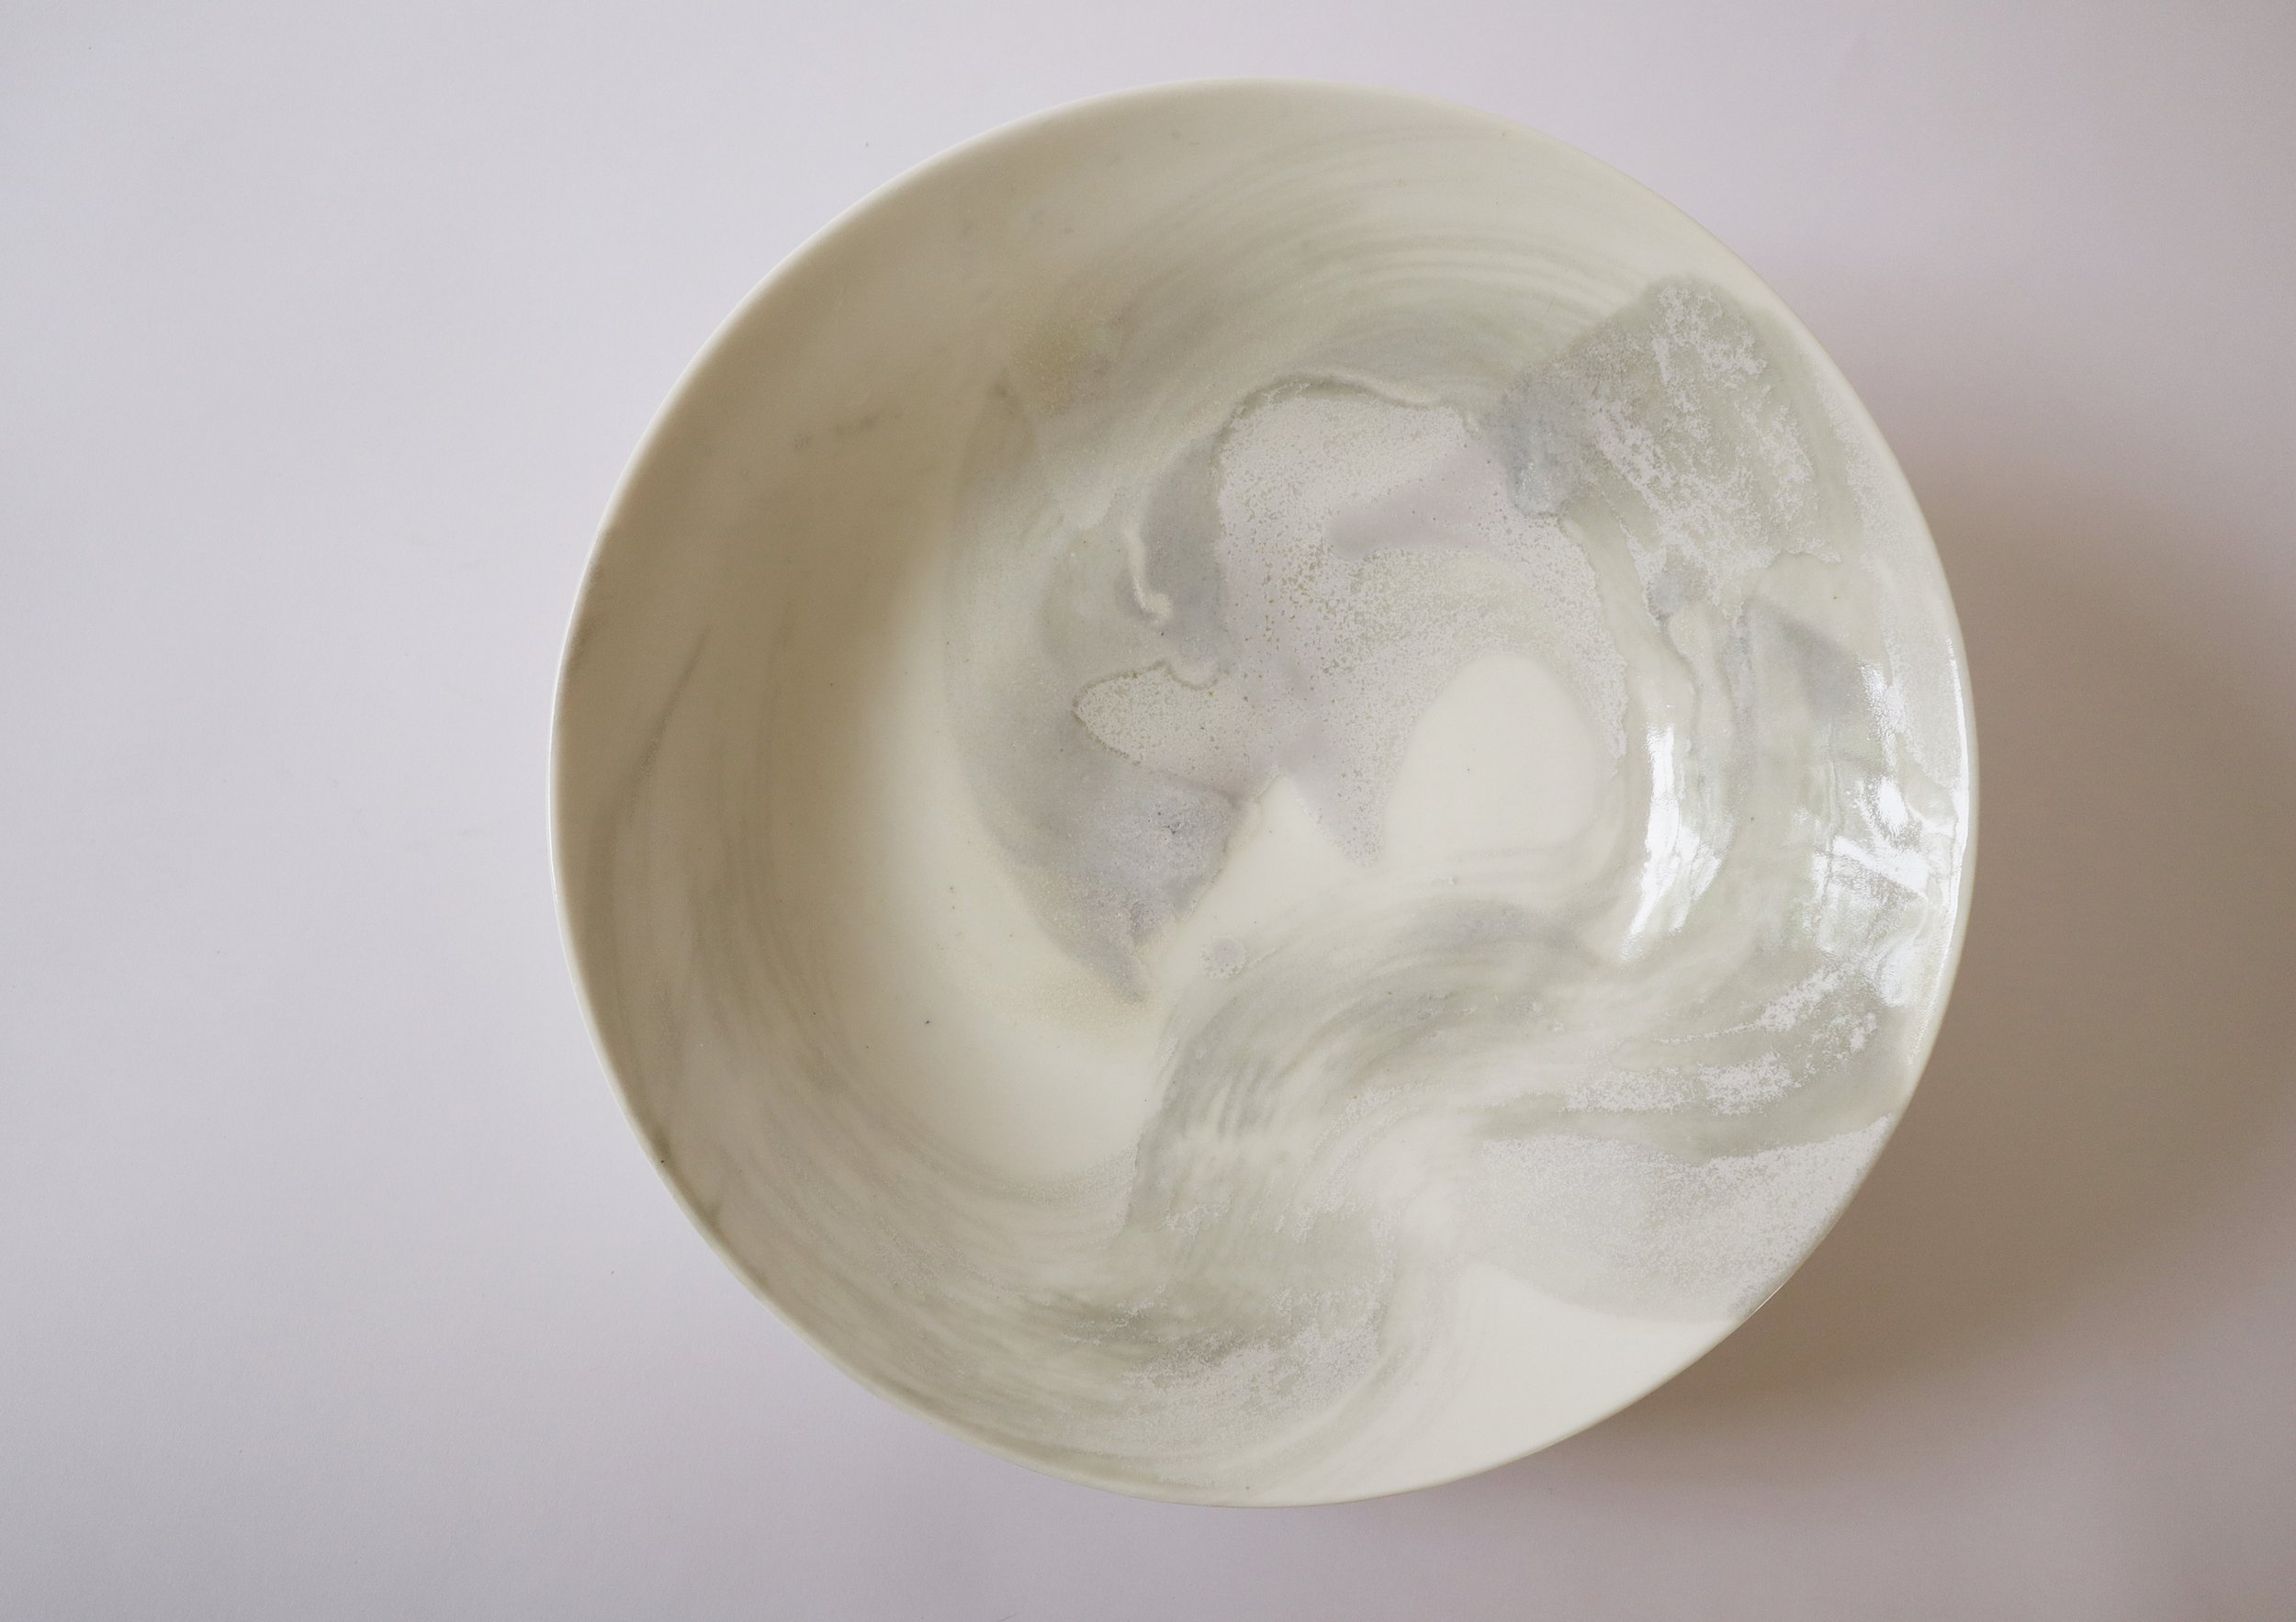  Title: RWH-193 Size: 9cm (H) x 33.5cm (W) Medium: Ceramic Price: £340 